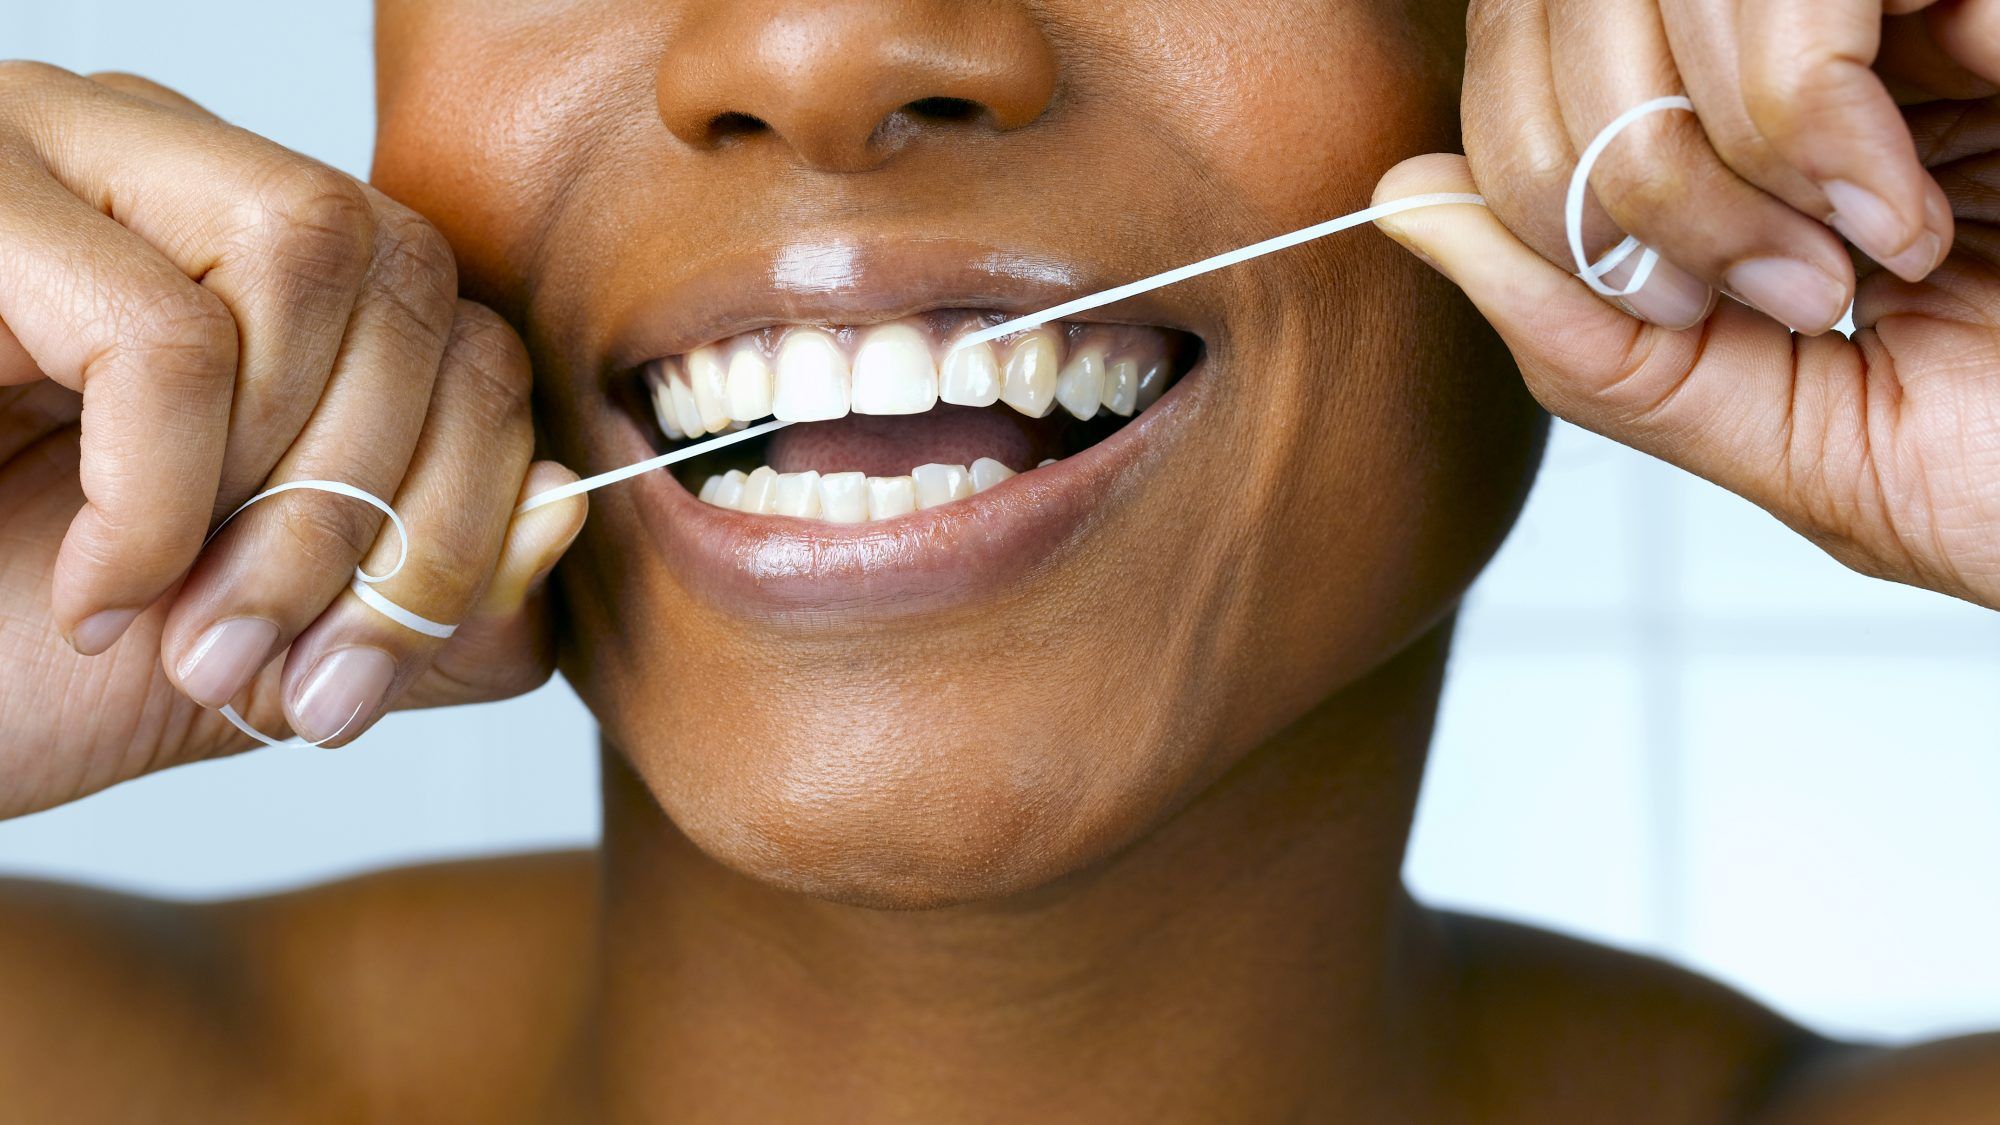 Blør tannkjøttet ditt? Her er 12 mulige årsaker - og hva du kan gjøre med dem